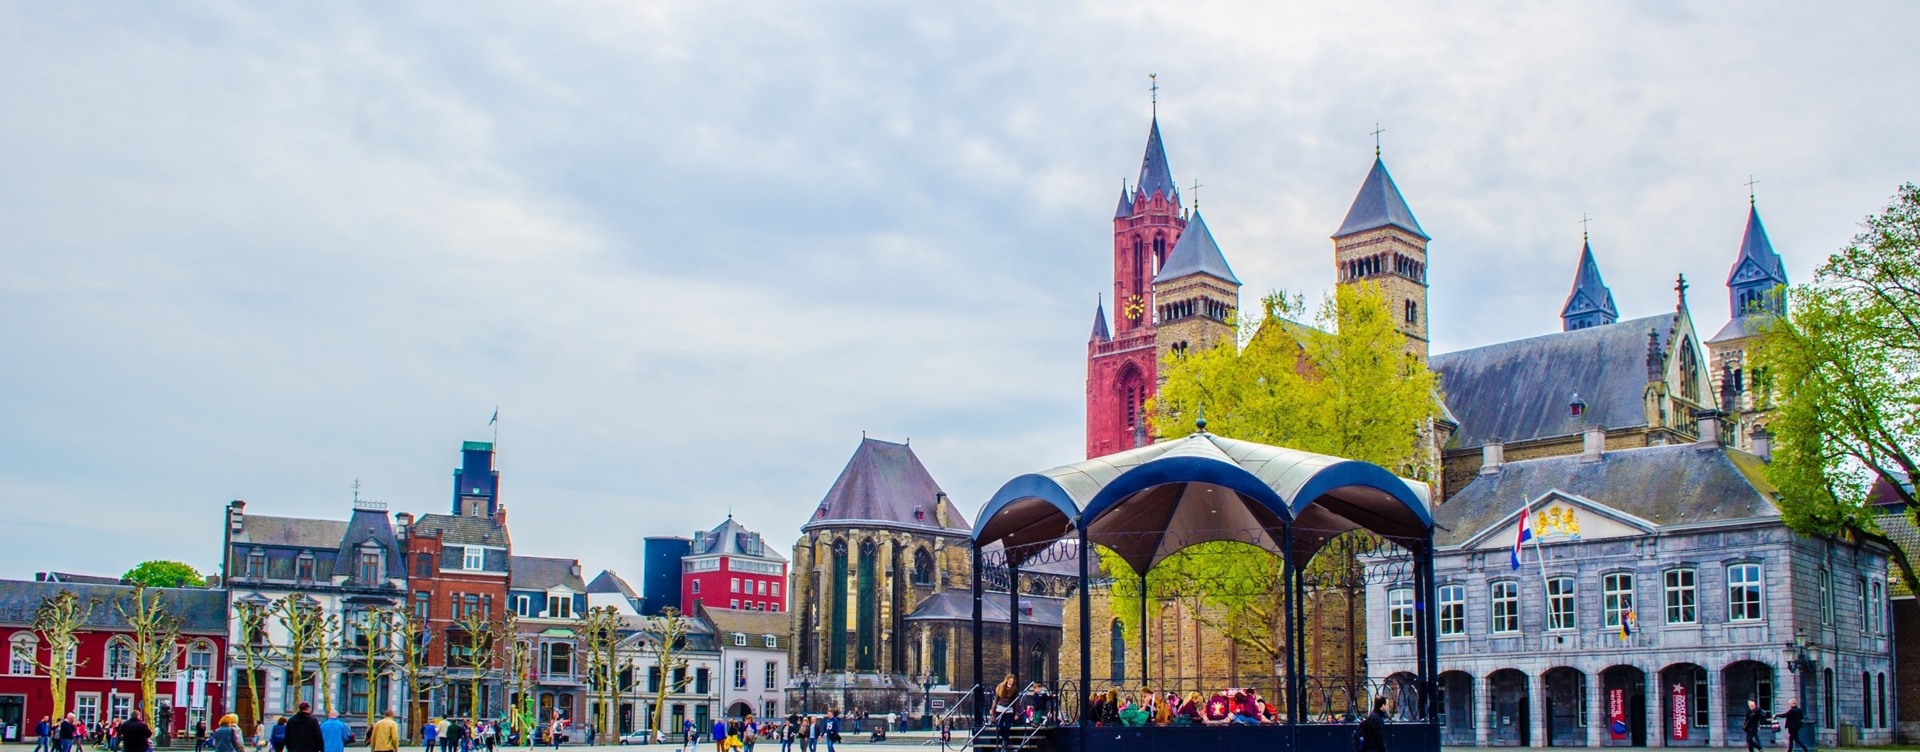 Découvrez les plus beaux endroits
des environs de Maastricht